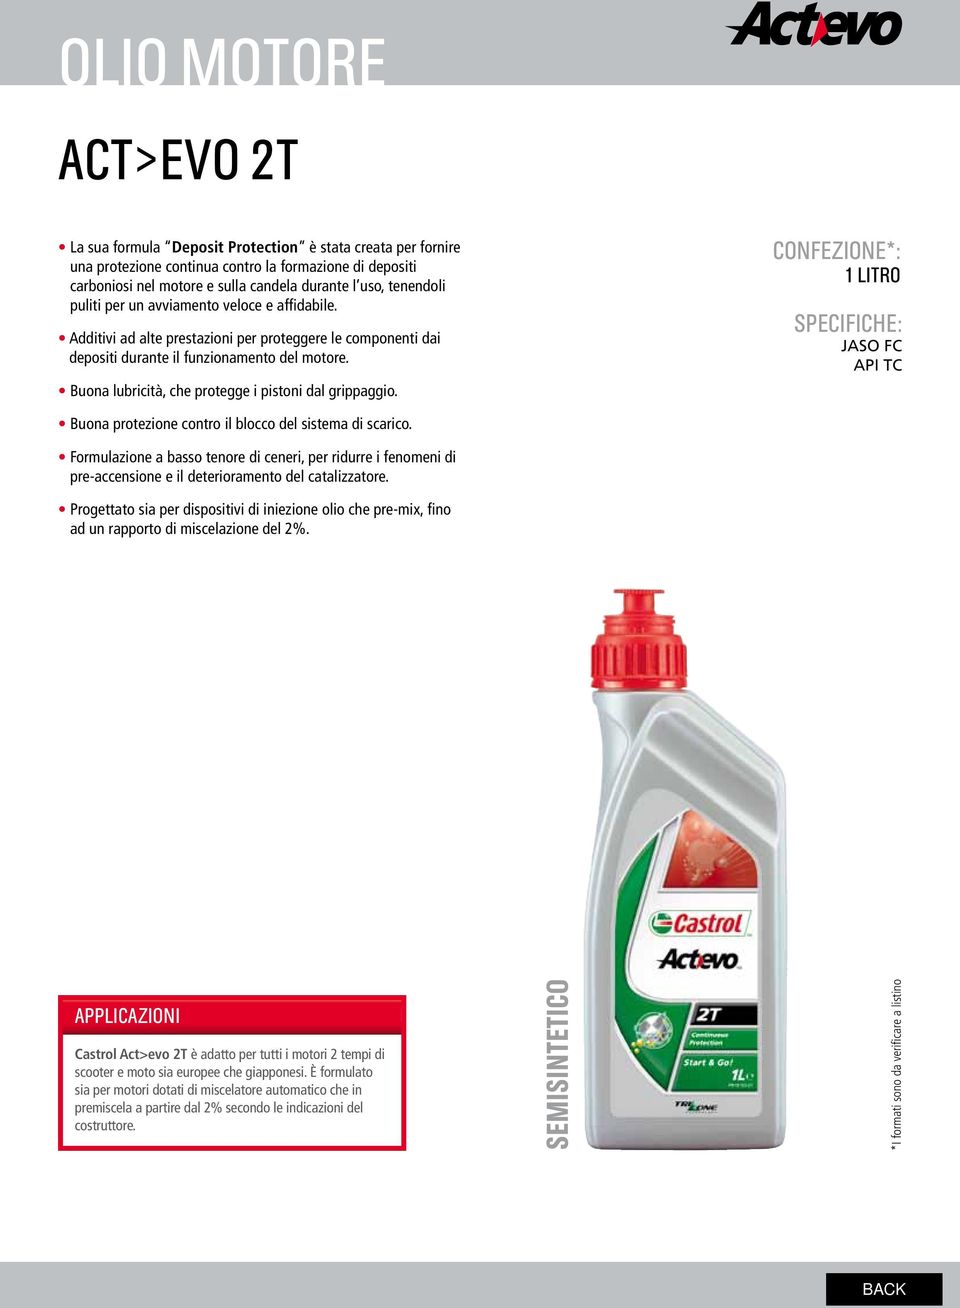 Buona lubricità, che protegge i pistoni dal grippaggio. CONFEZIONE*: 1 LITRO SPECIFICHE: JASO FC API TC Buona protezione contro il blocco del sistema di scarico.